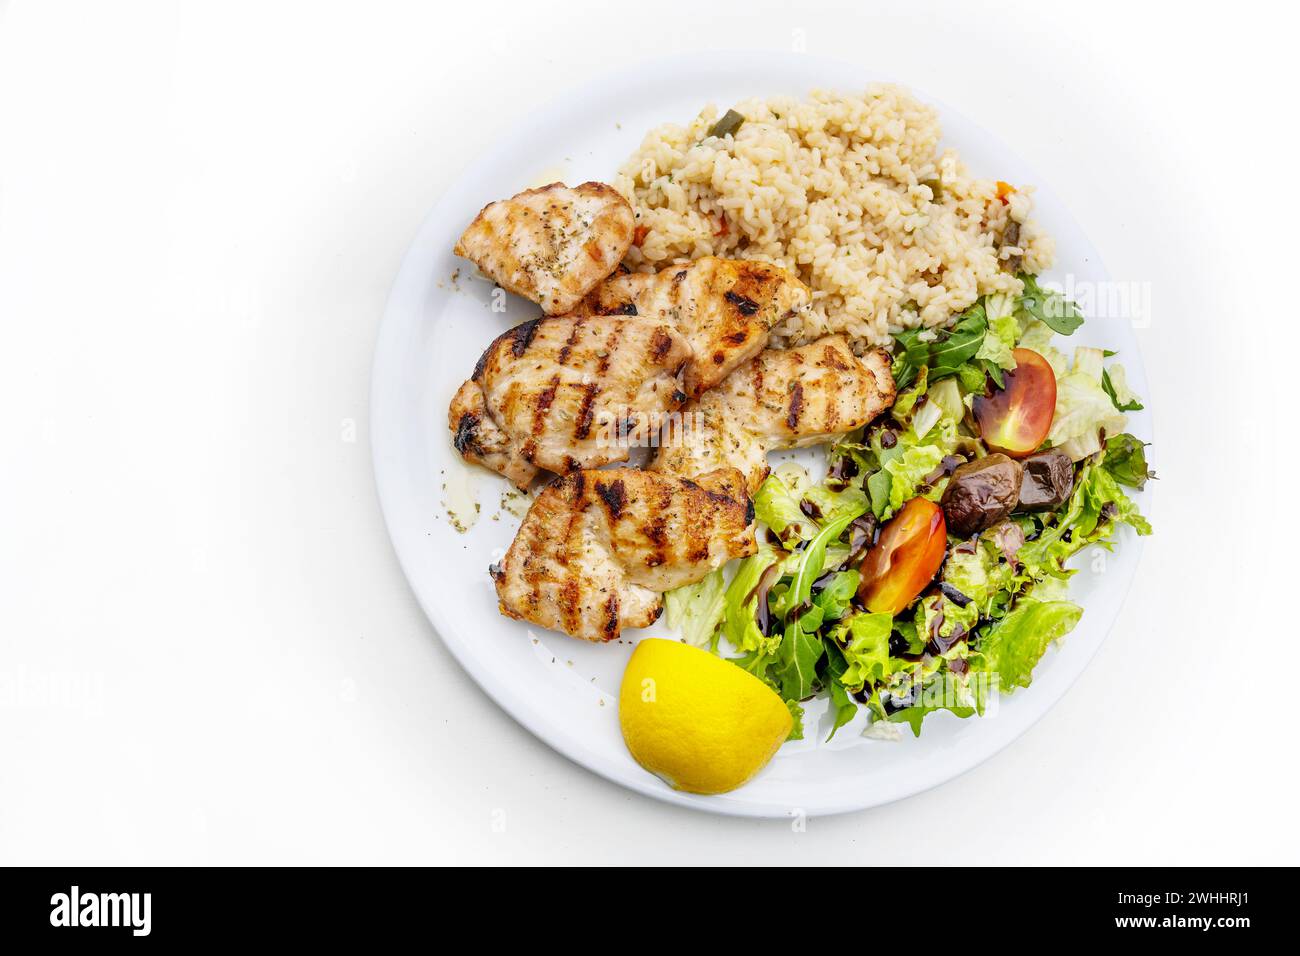 Filet de poulet grillé avec salade mixte, riz et citron, plat méditerranéen servi sur une assiette, table blanche, espace copie, haut ang Banque D'Images